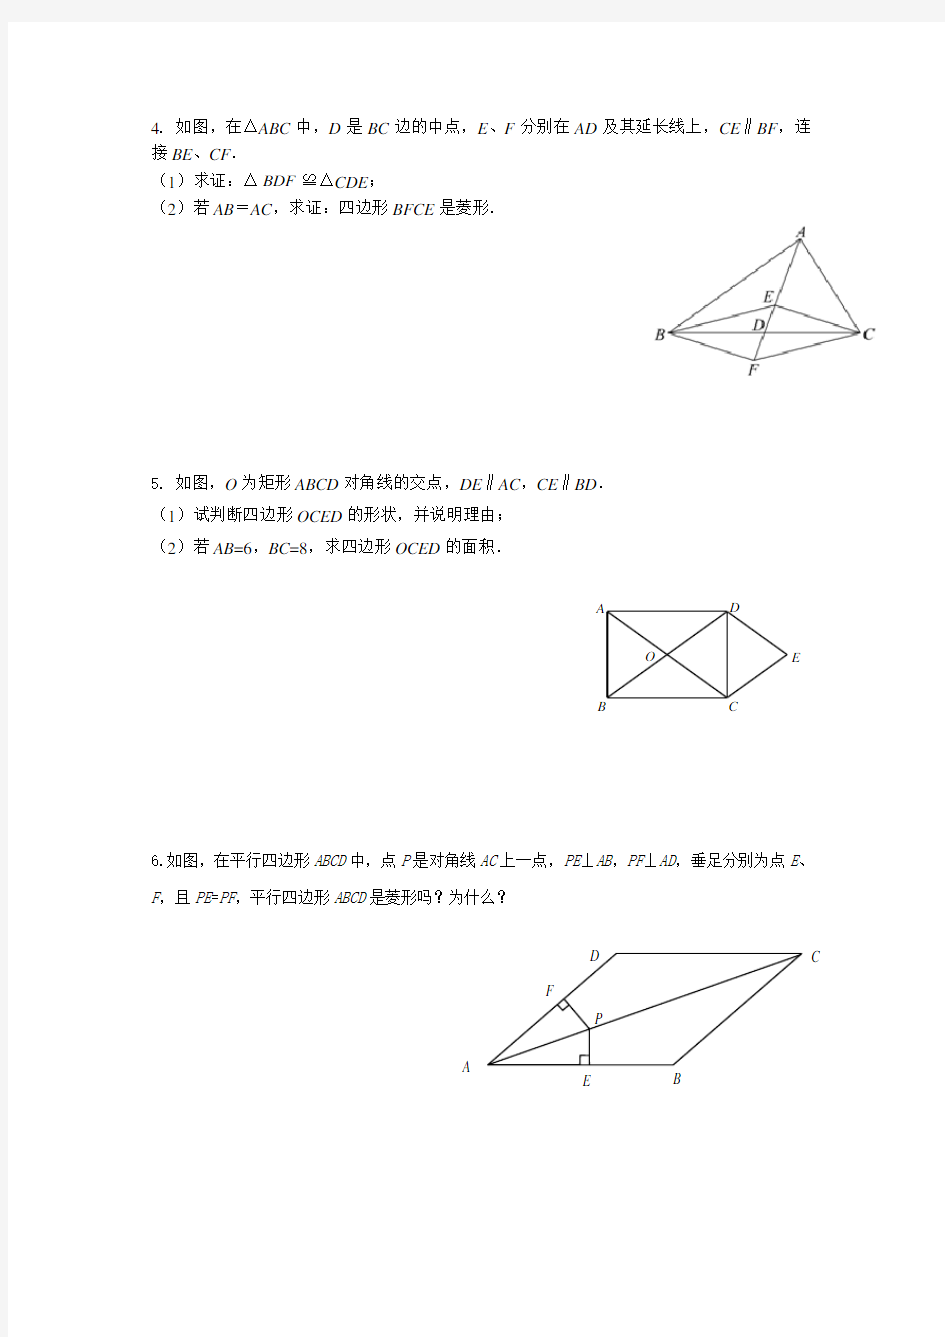 菱形的判定证明题练习 (1)